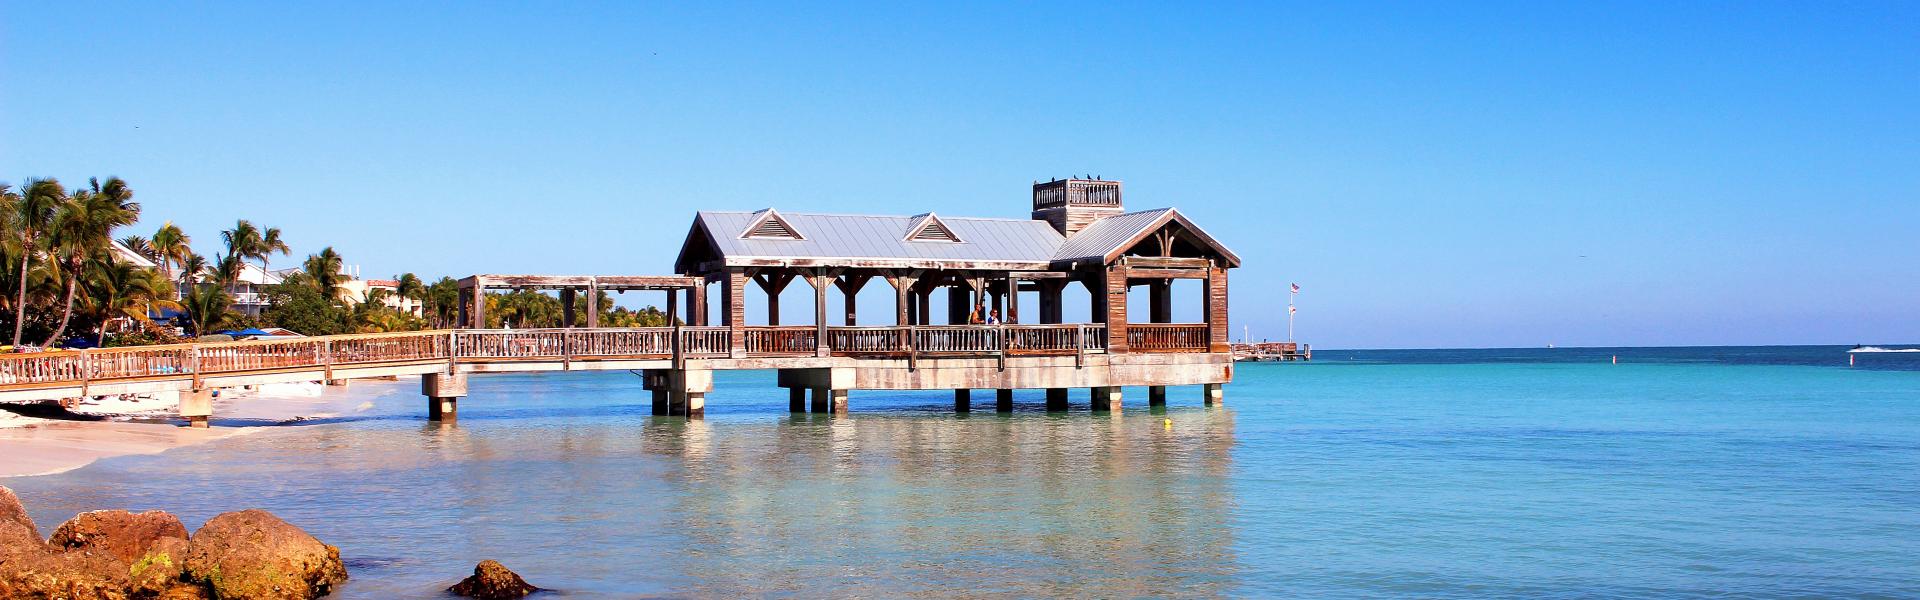 Key West Vacation Rentals - Wimdu